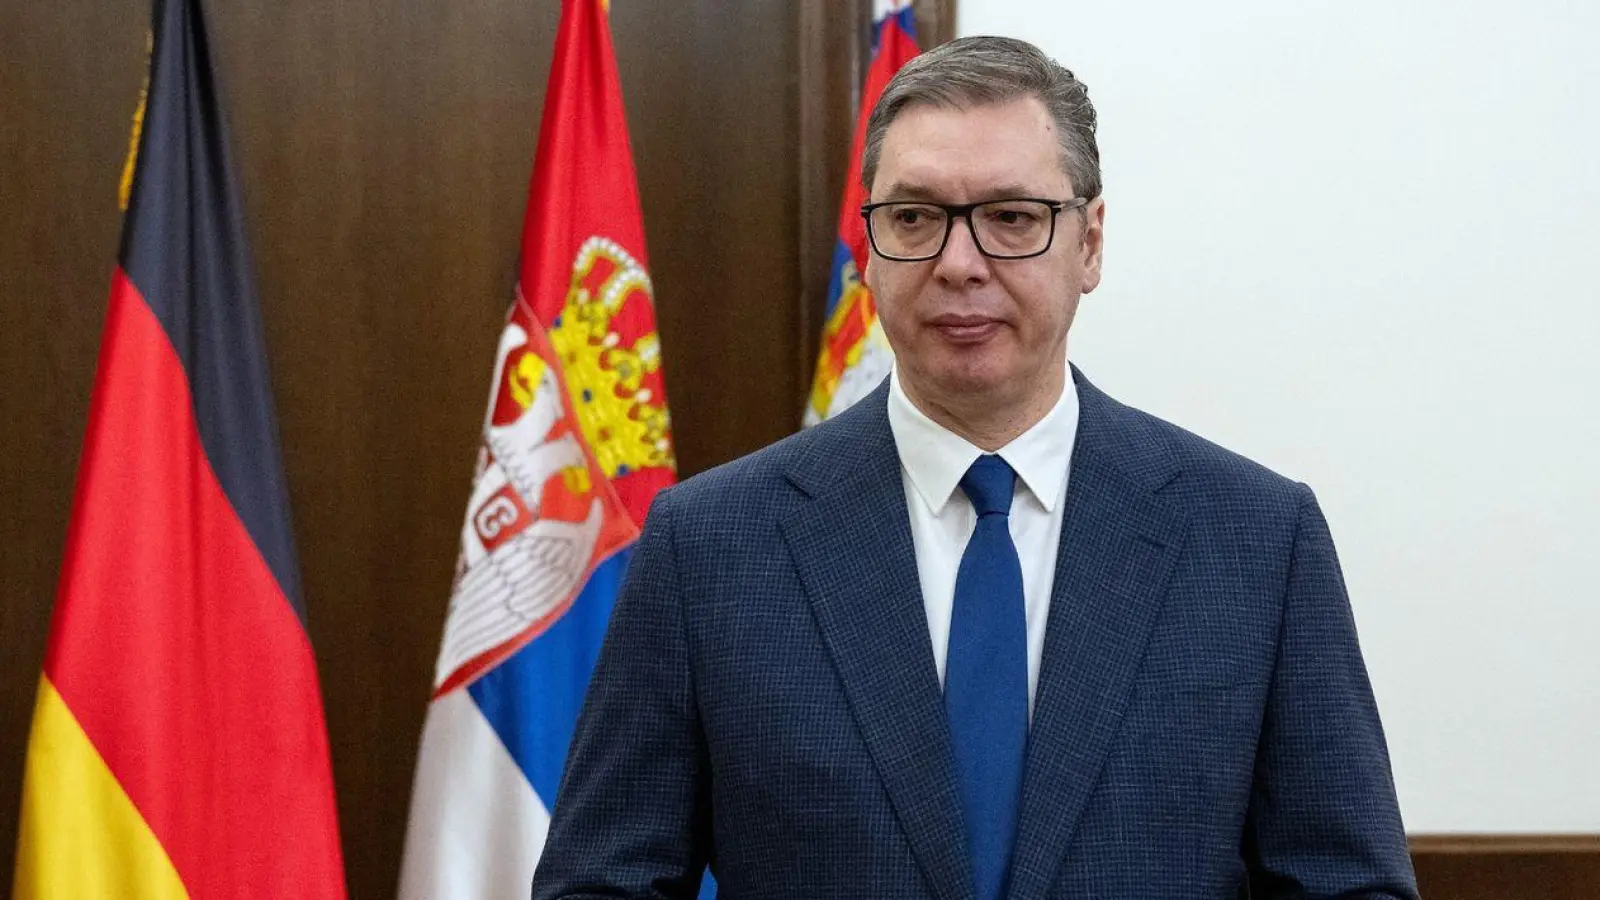 Aleksandar Vucic, Präsident von Serbien, steht in seinem Amtszimmer. (Foto: Soeren Stache/dpa/Archivbild)